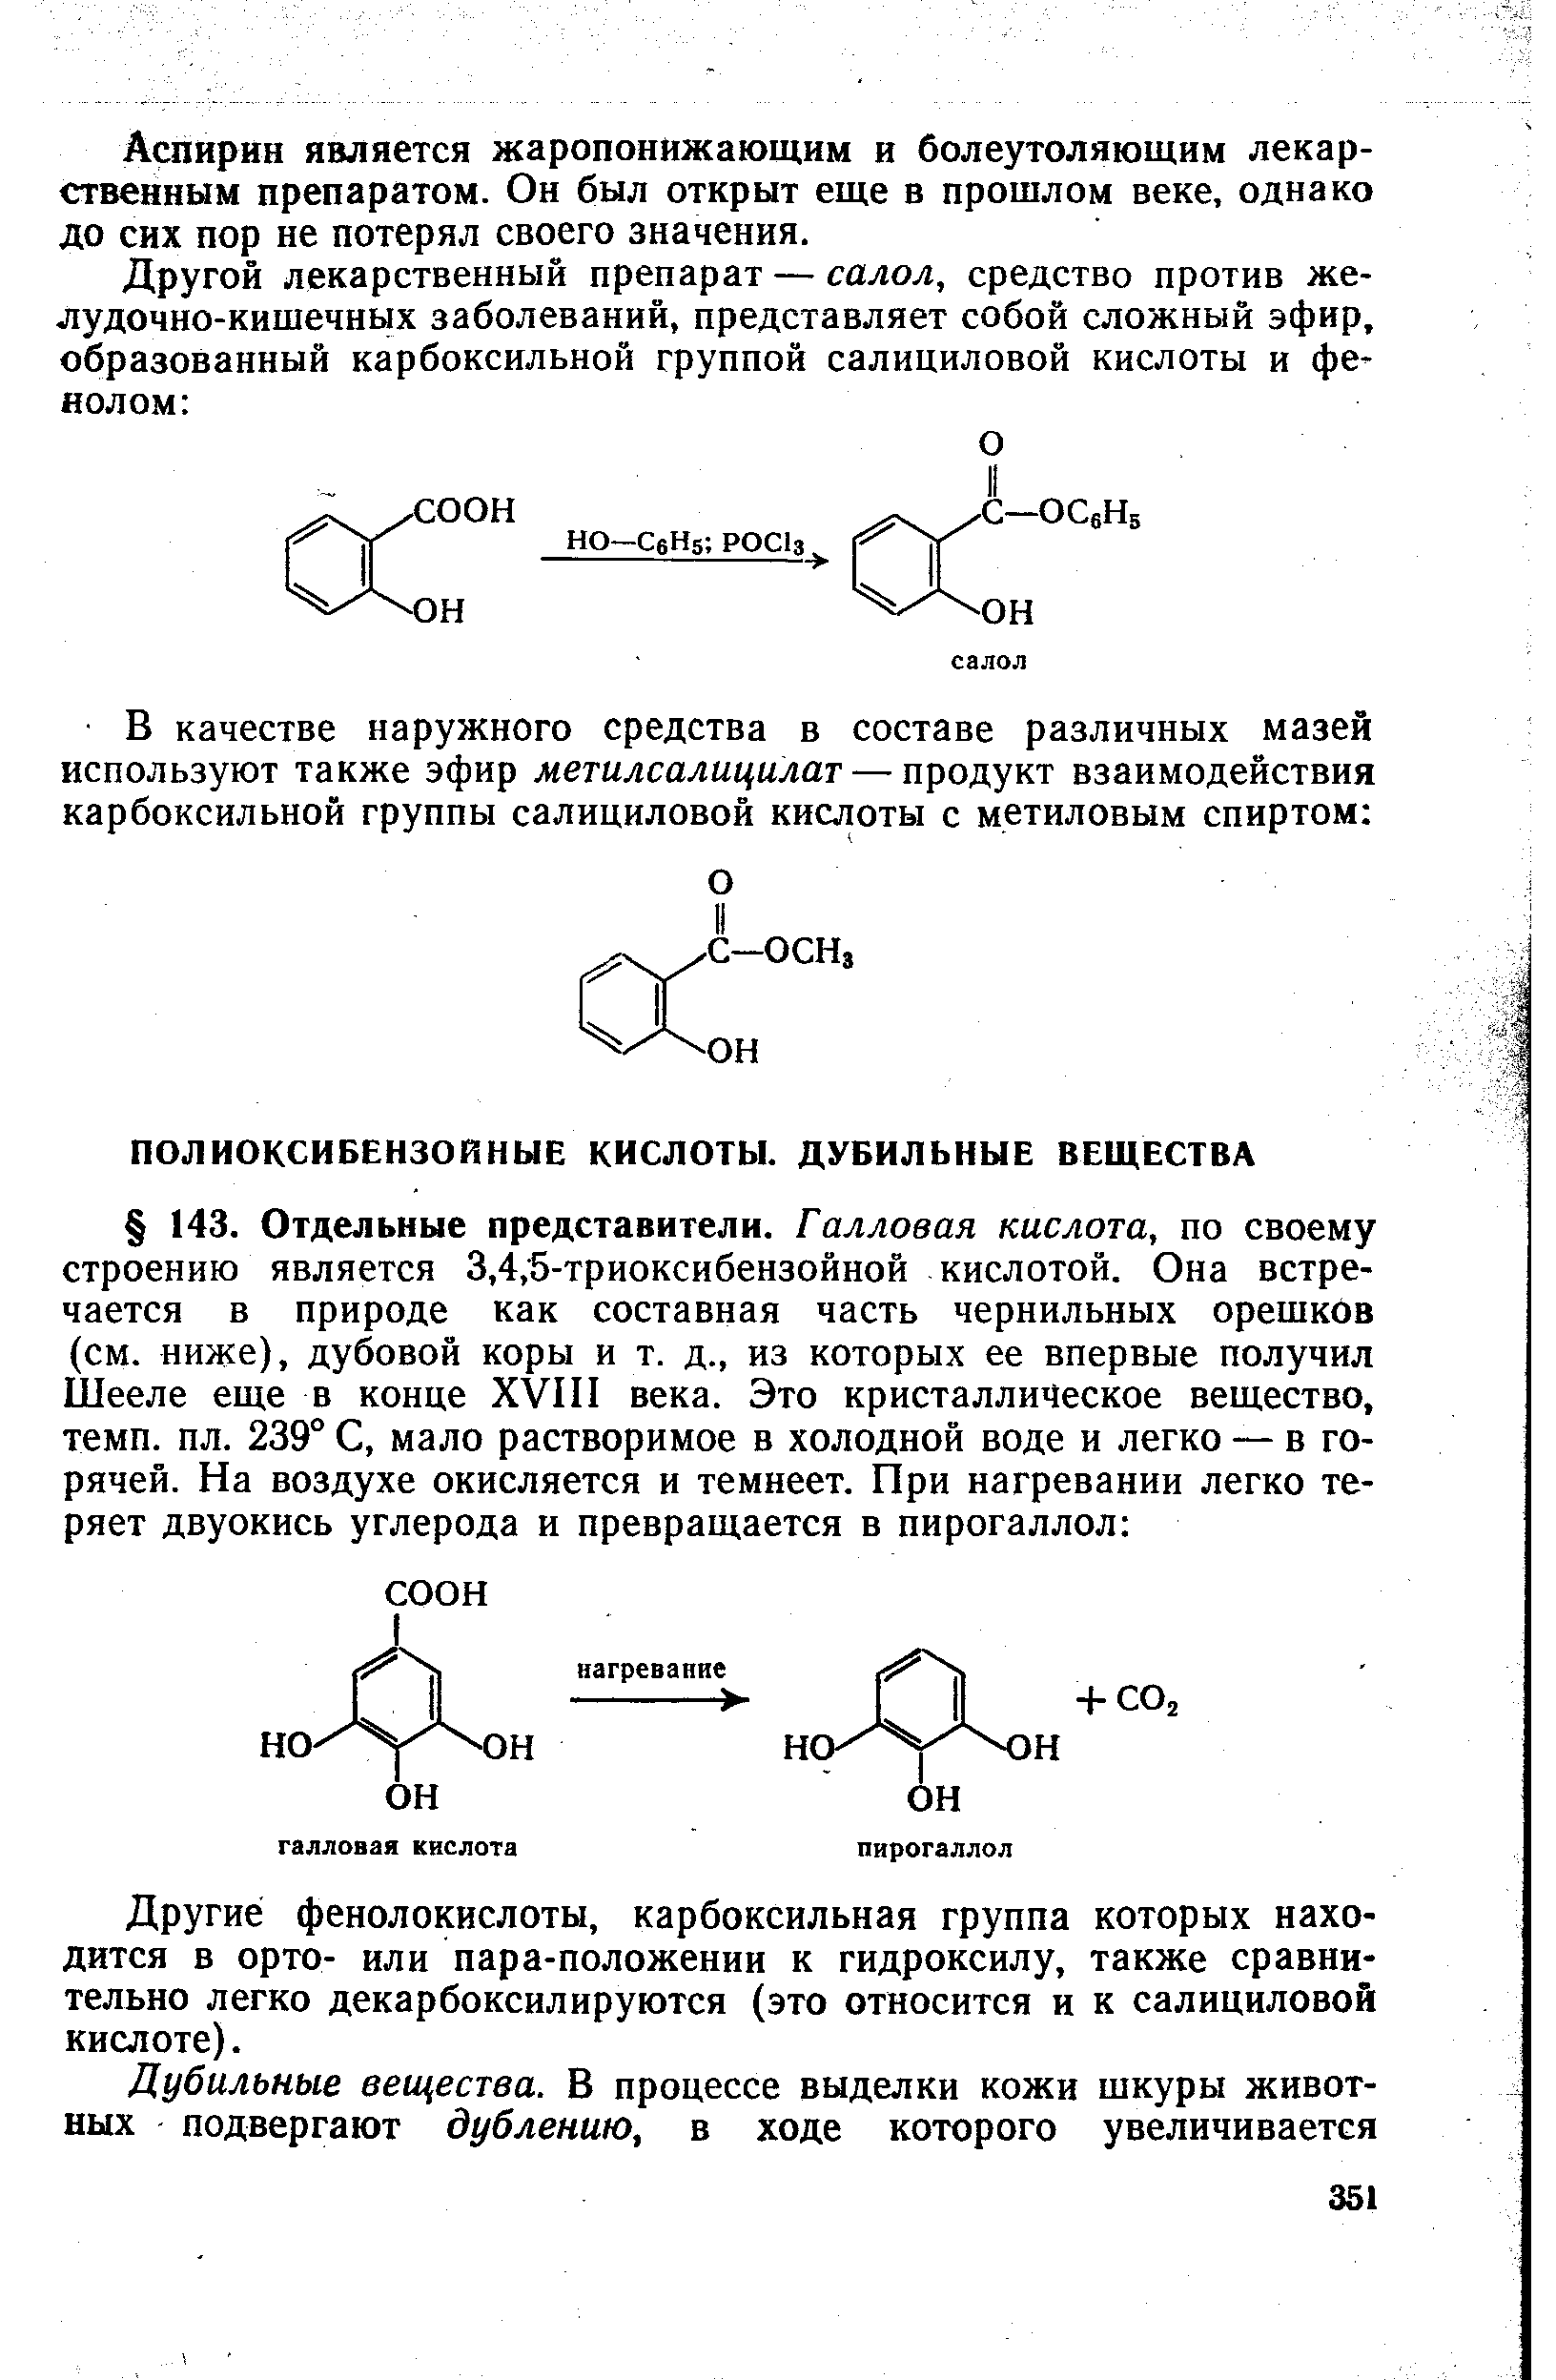 Другие фенолокислоты, карбоксильная группа которых находится в орто- или пара-положении к гидроксилу, также сравнительно легко декарбоксилируются (это относится и к салициловой кислоте).